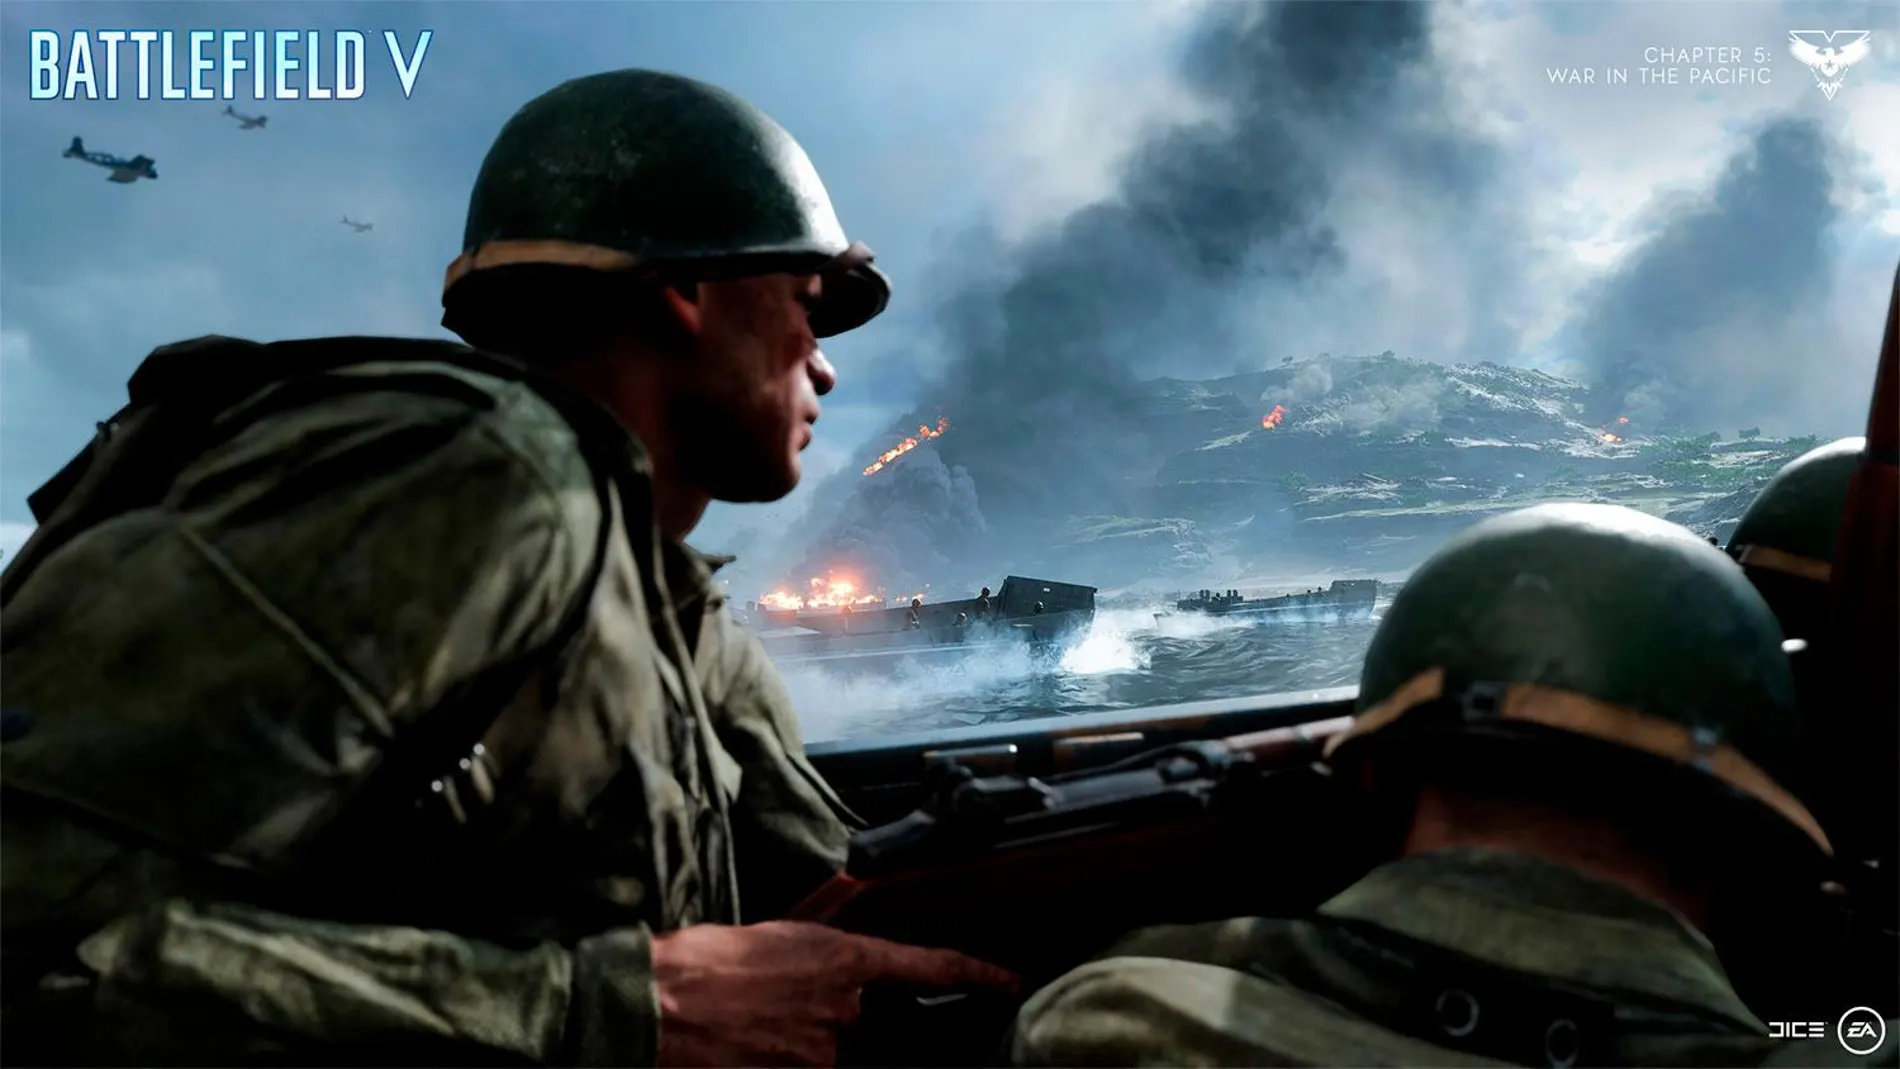 Juega gratis a Battlefield V, que confirma planes y contenido para su expansión más ambiciosa